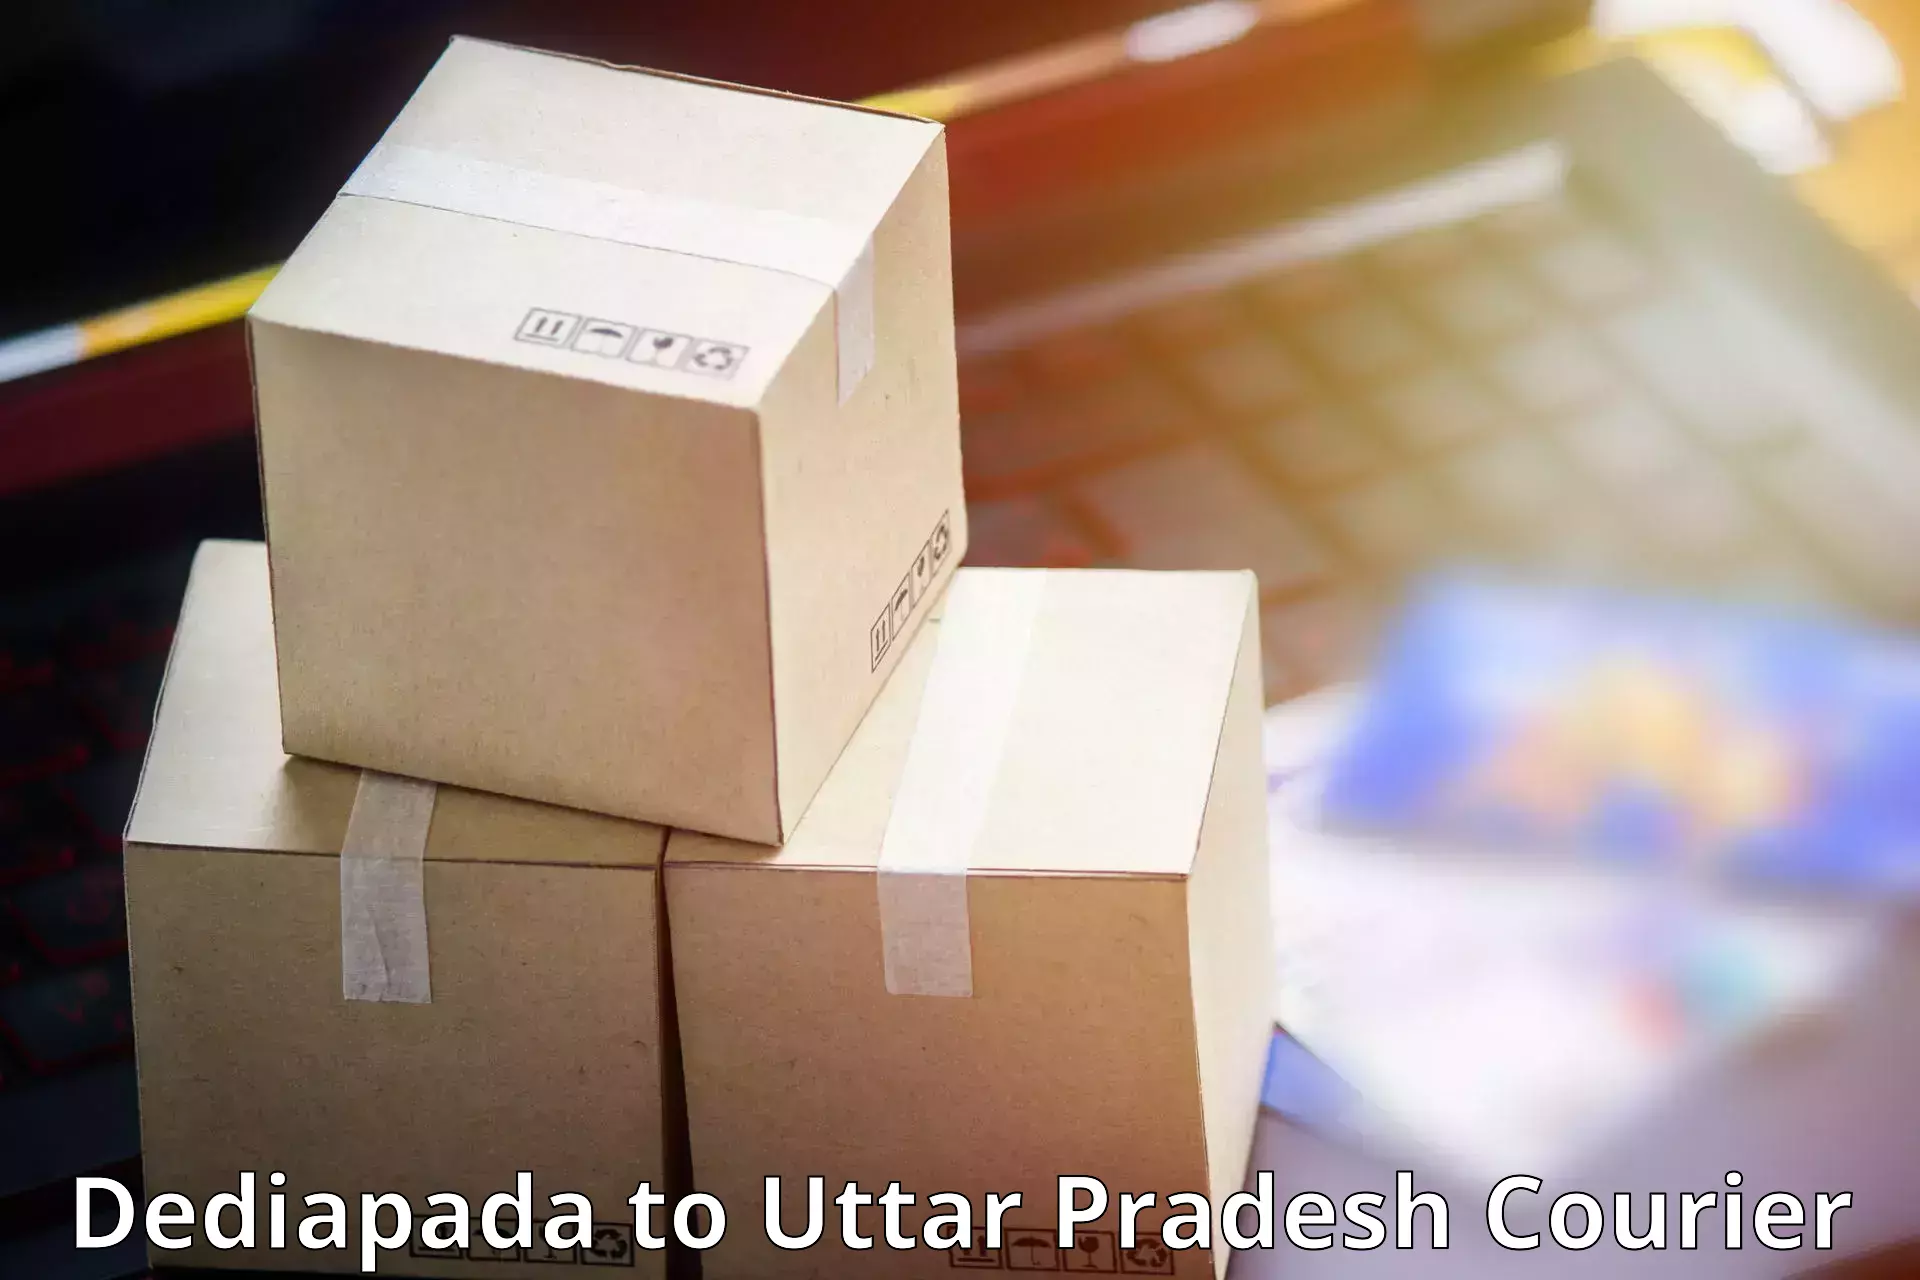 Package tracking in Dediapada to Sant Kabir Nagar